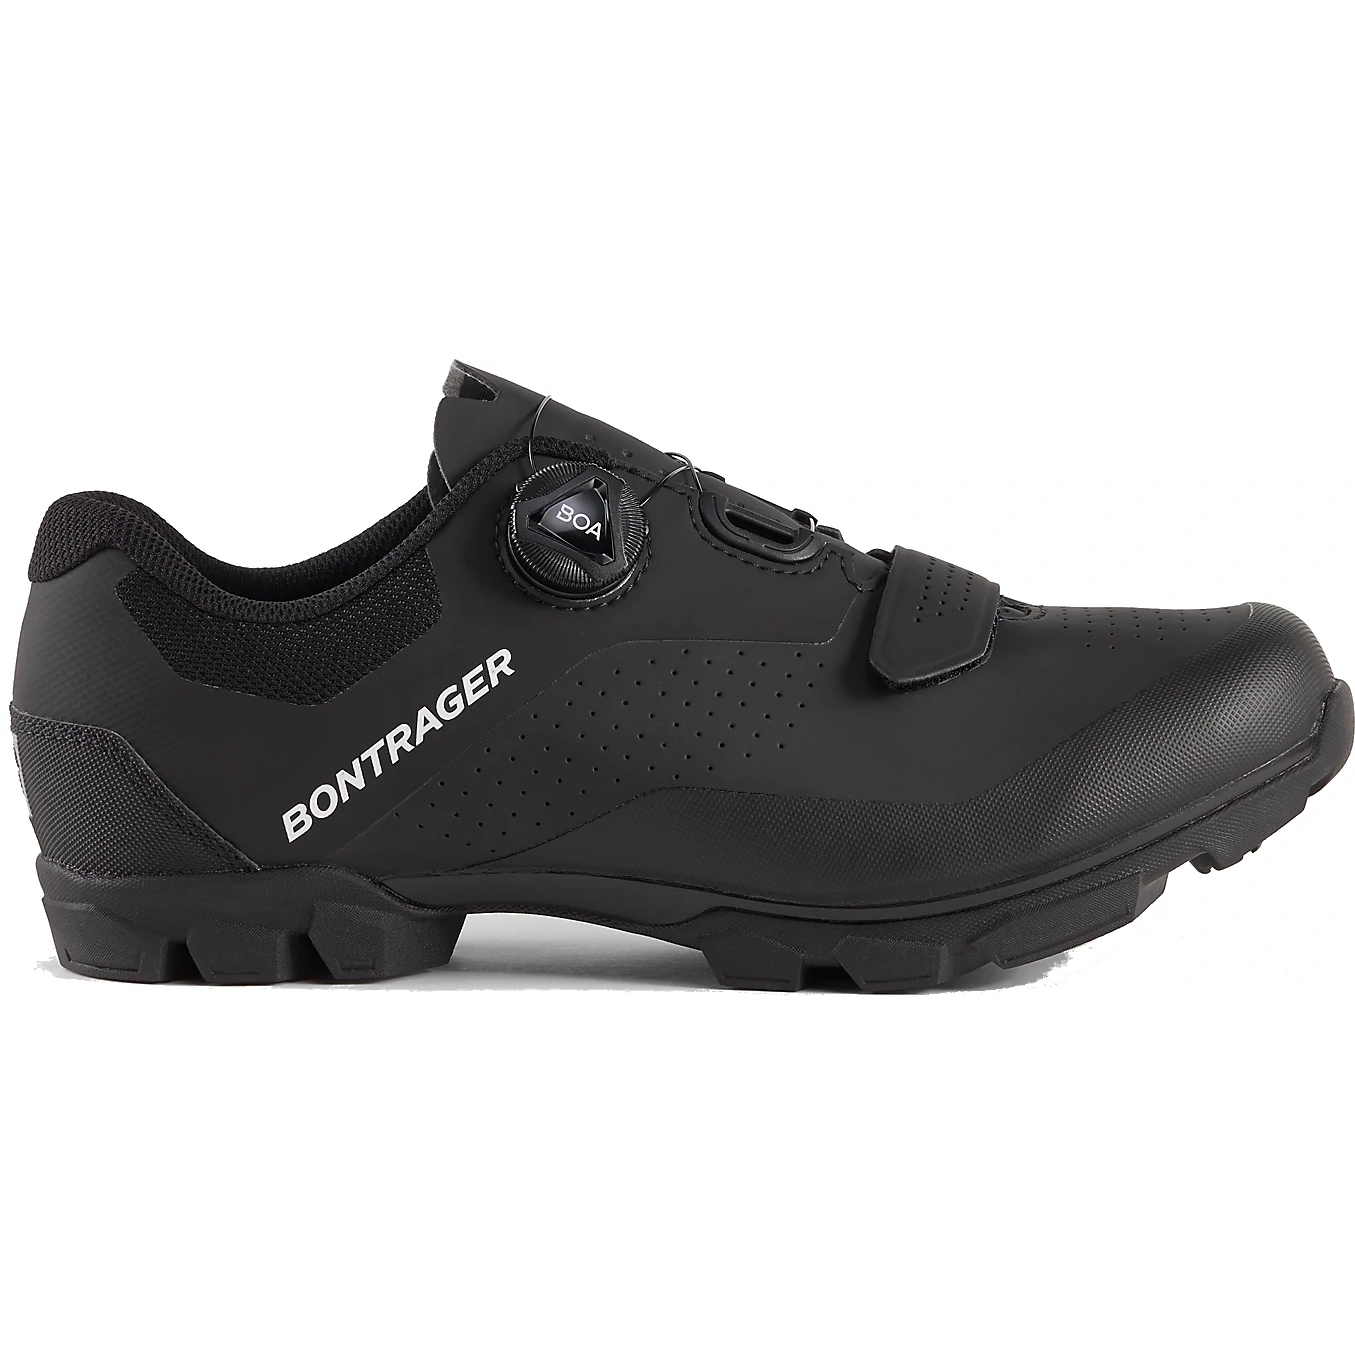 Produktbild von Bontrager Foray Mountainbike Schuh - black